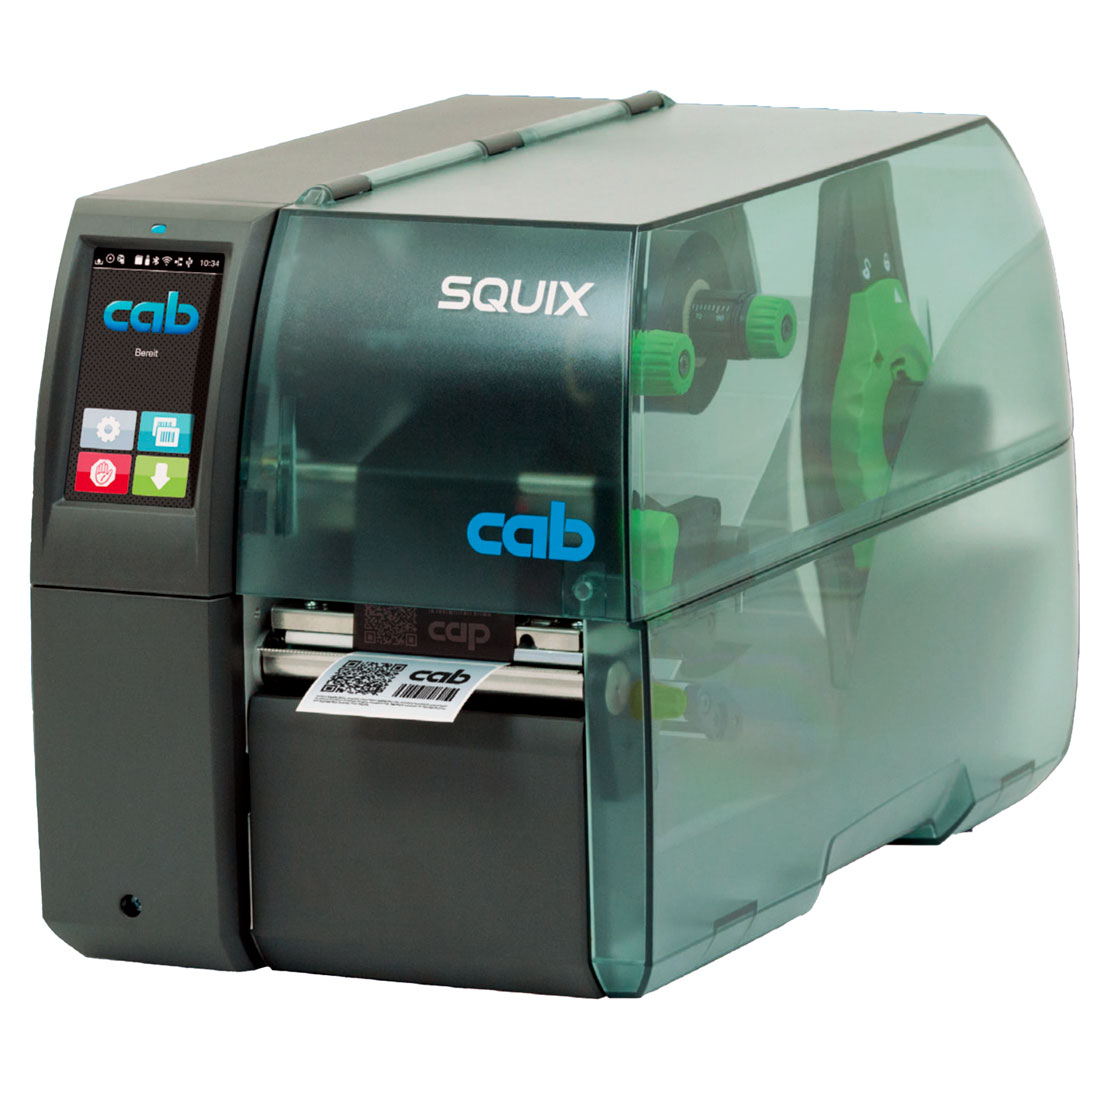 imprimante cab squix 4.3 300dpi tiqueteuse industrielle